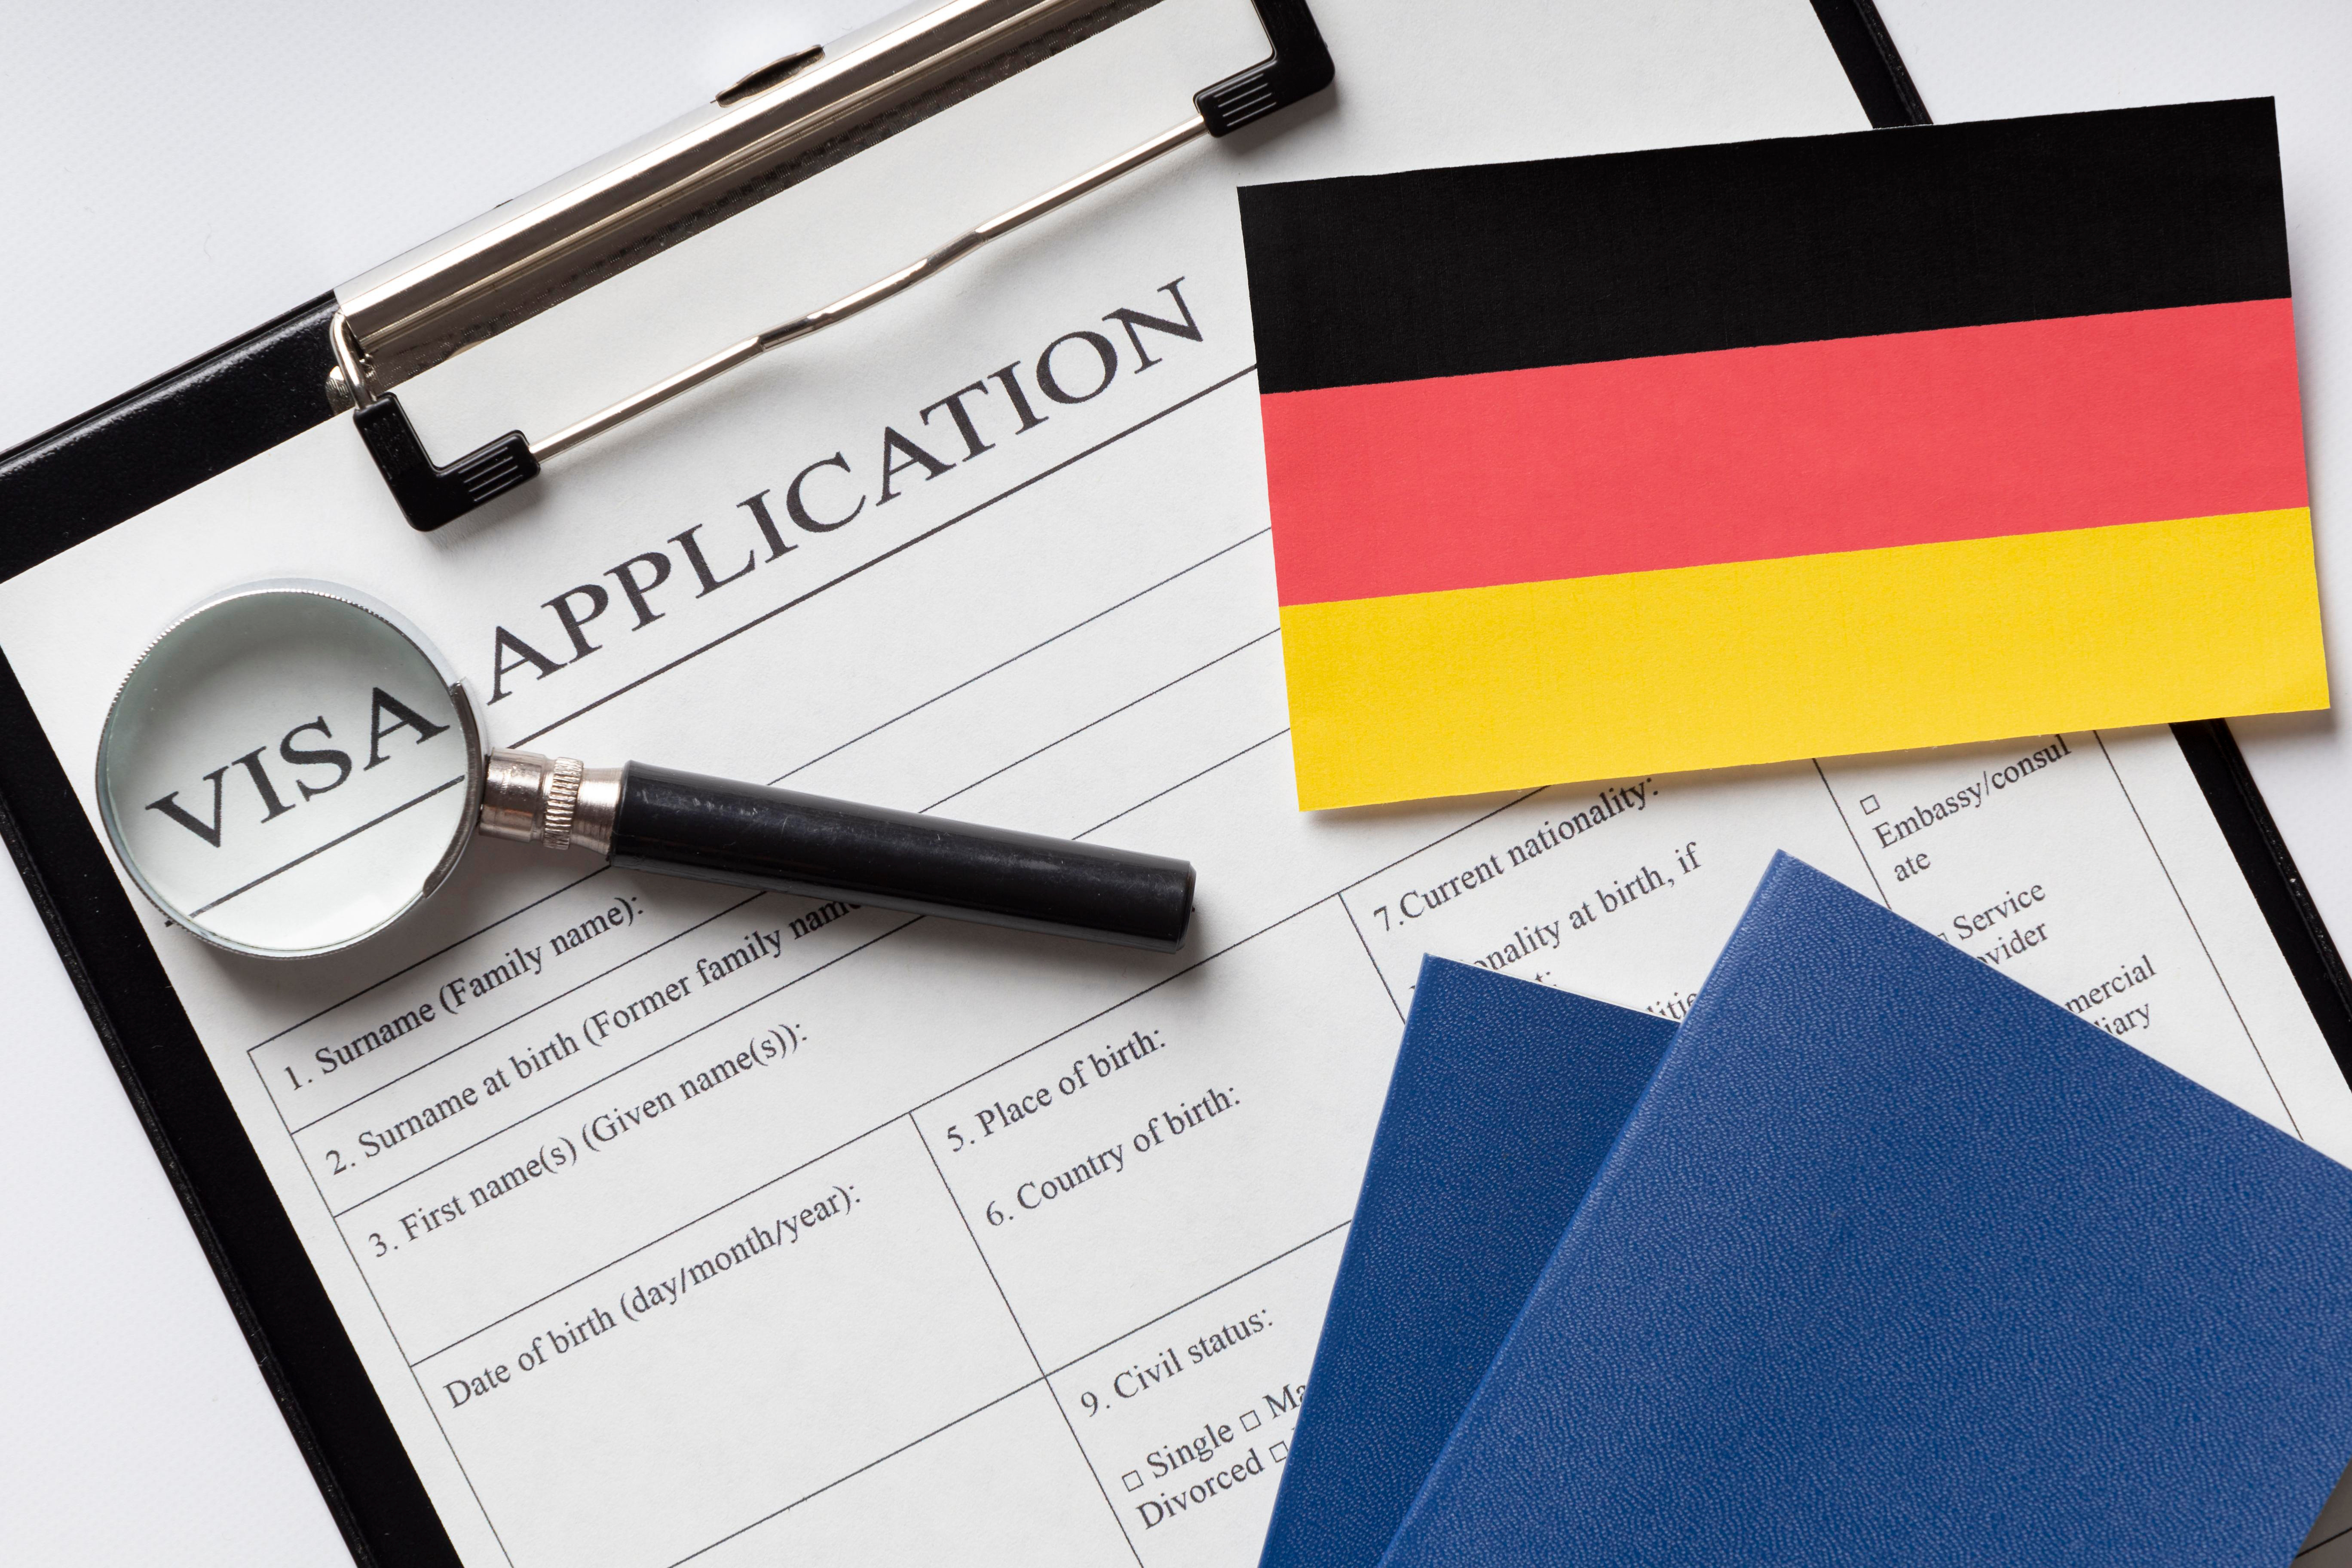 Виза в Германию, которую иностранцам надо оформлять для работы в стране